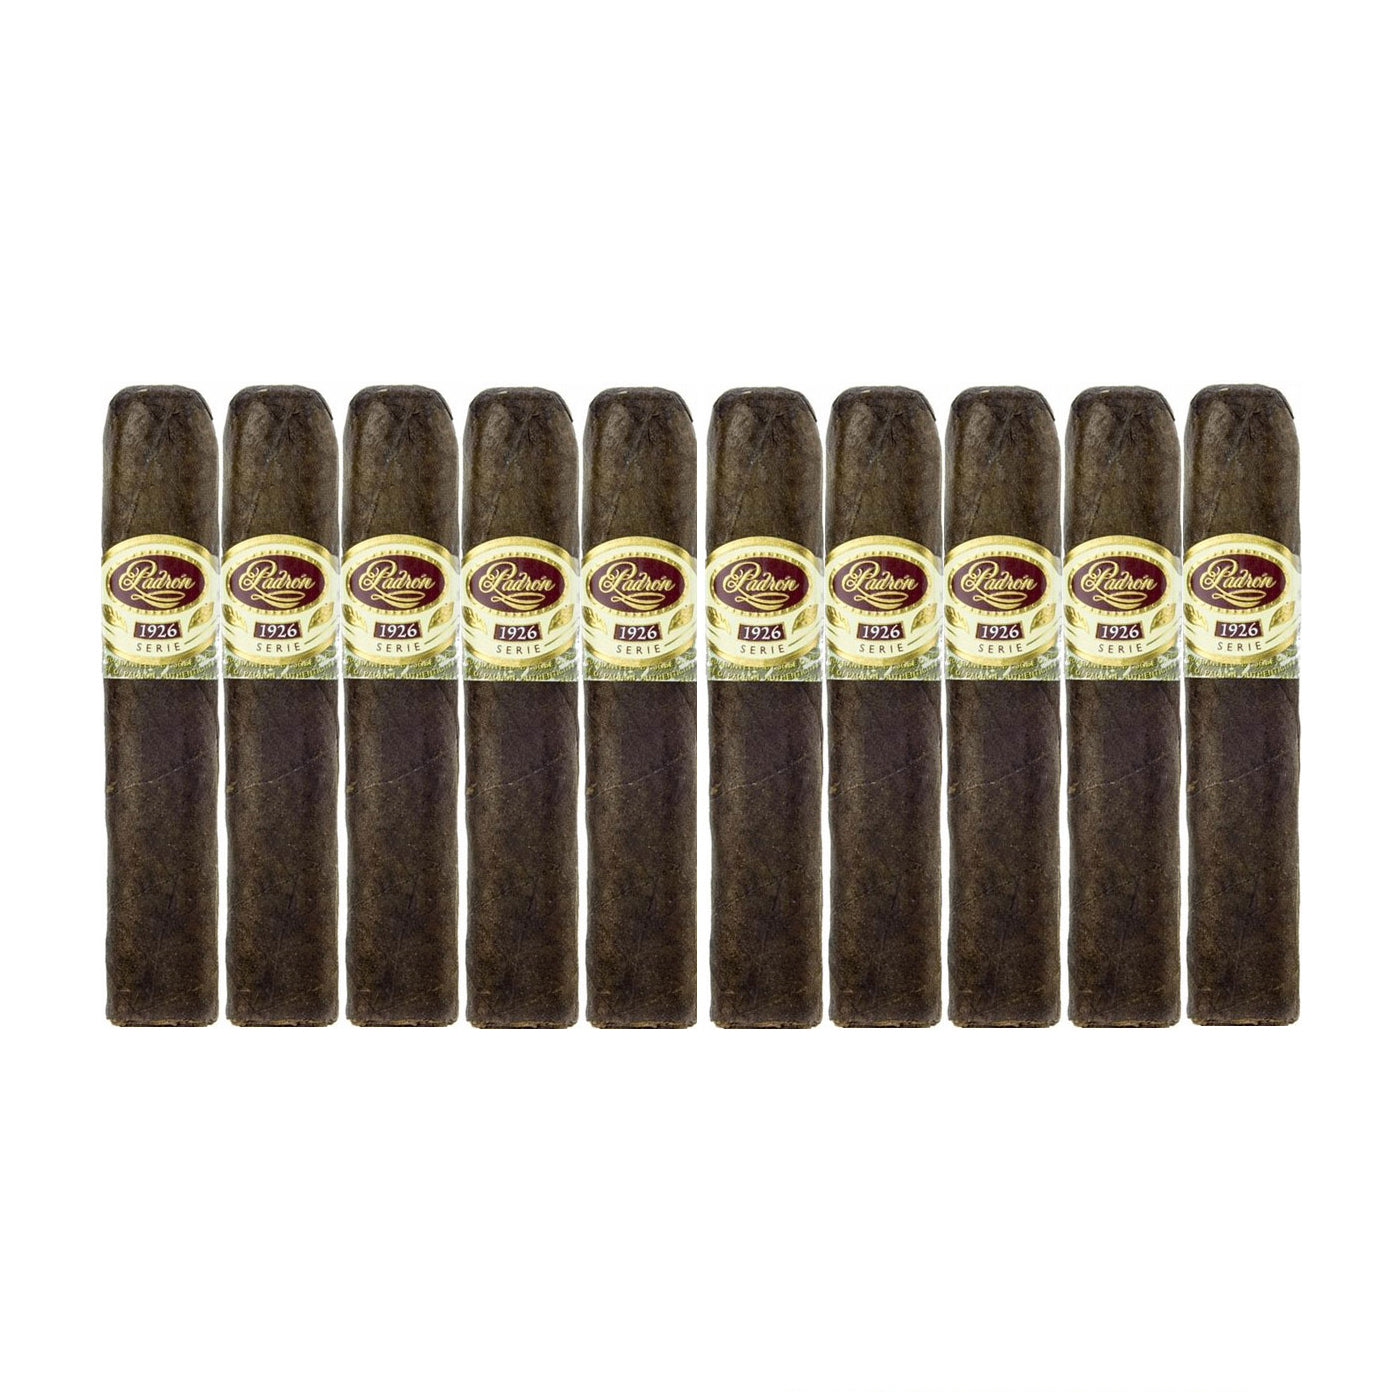 Padron 1926 No.35 Maduro 4 x 48 Cigars 10 Pack